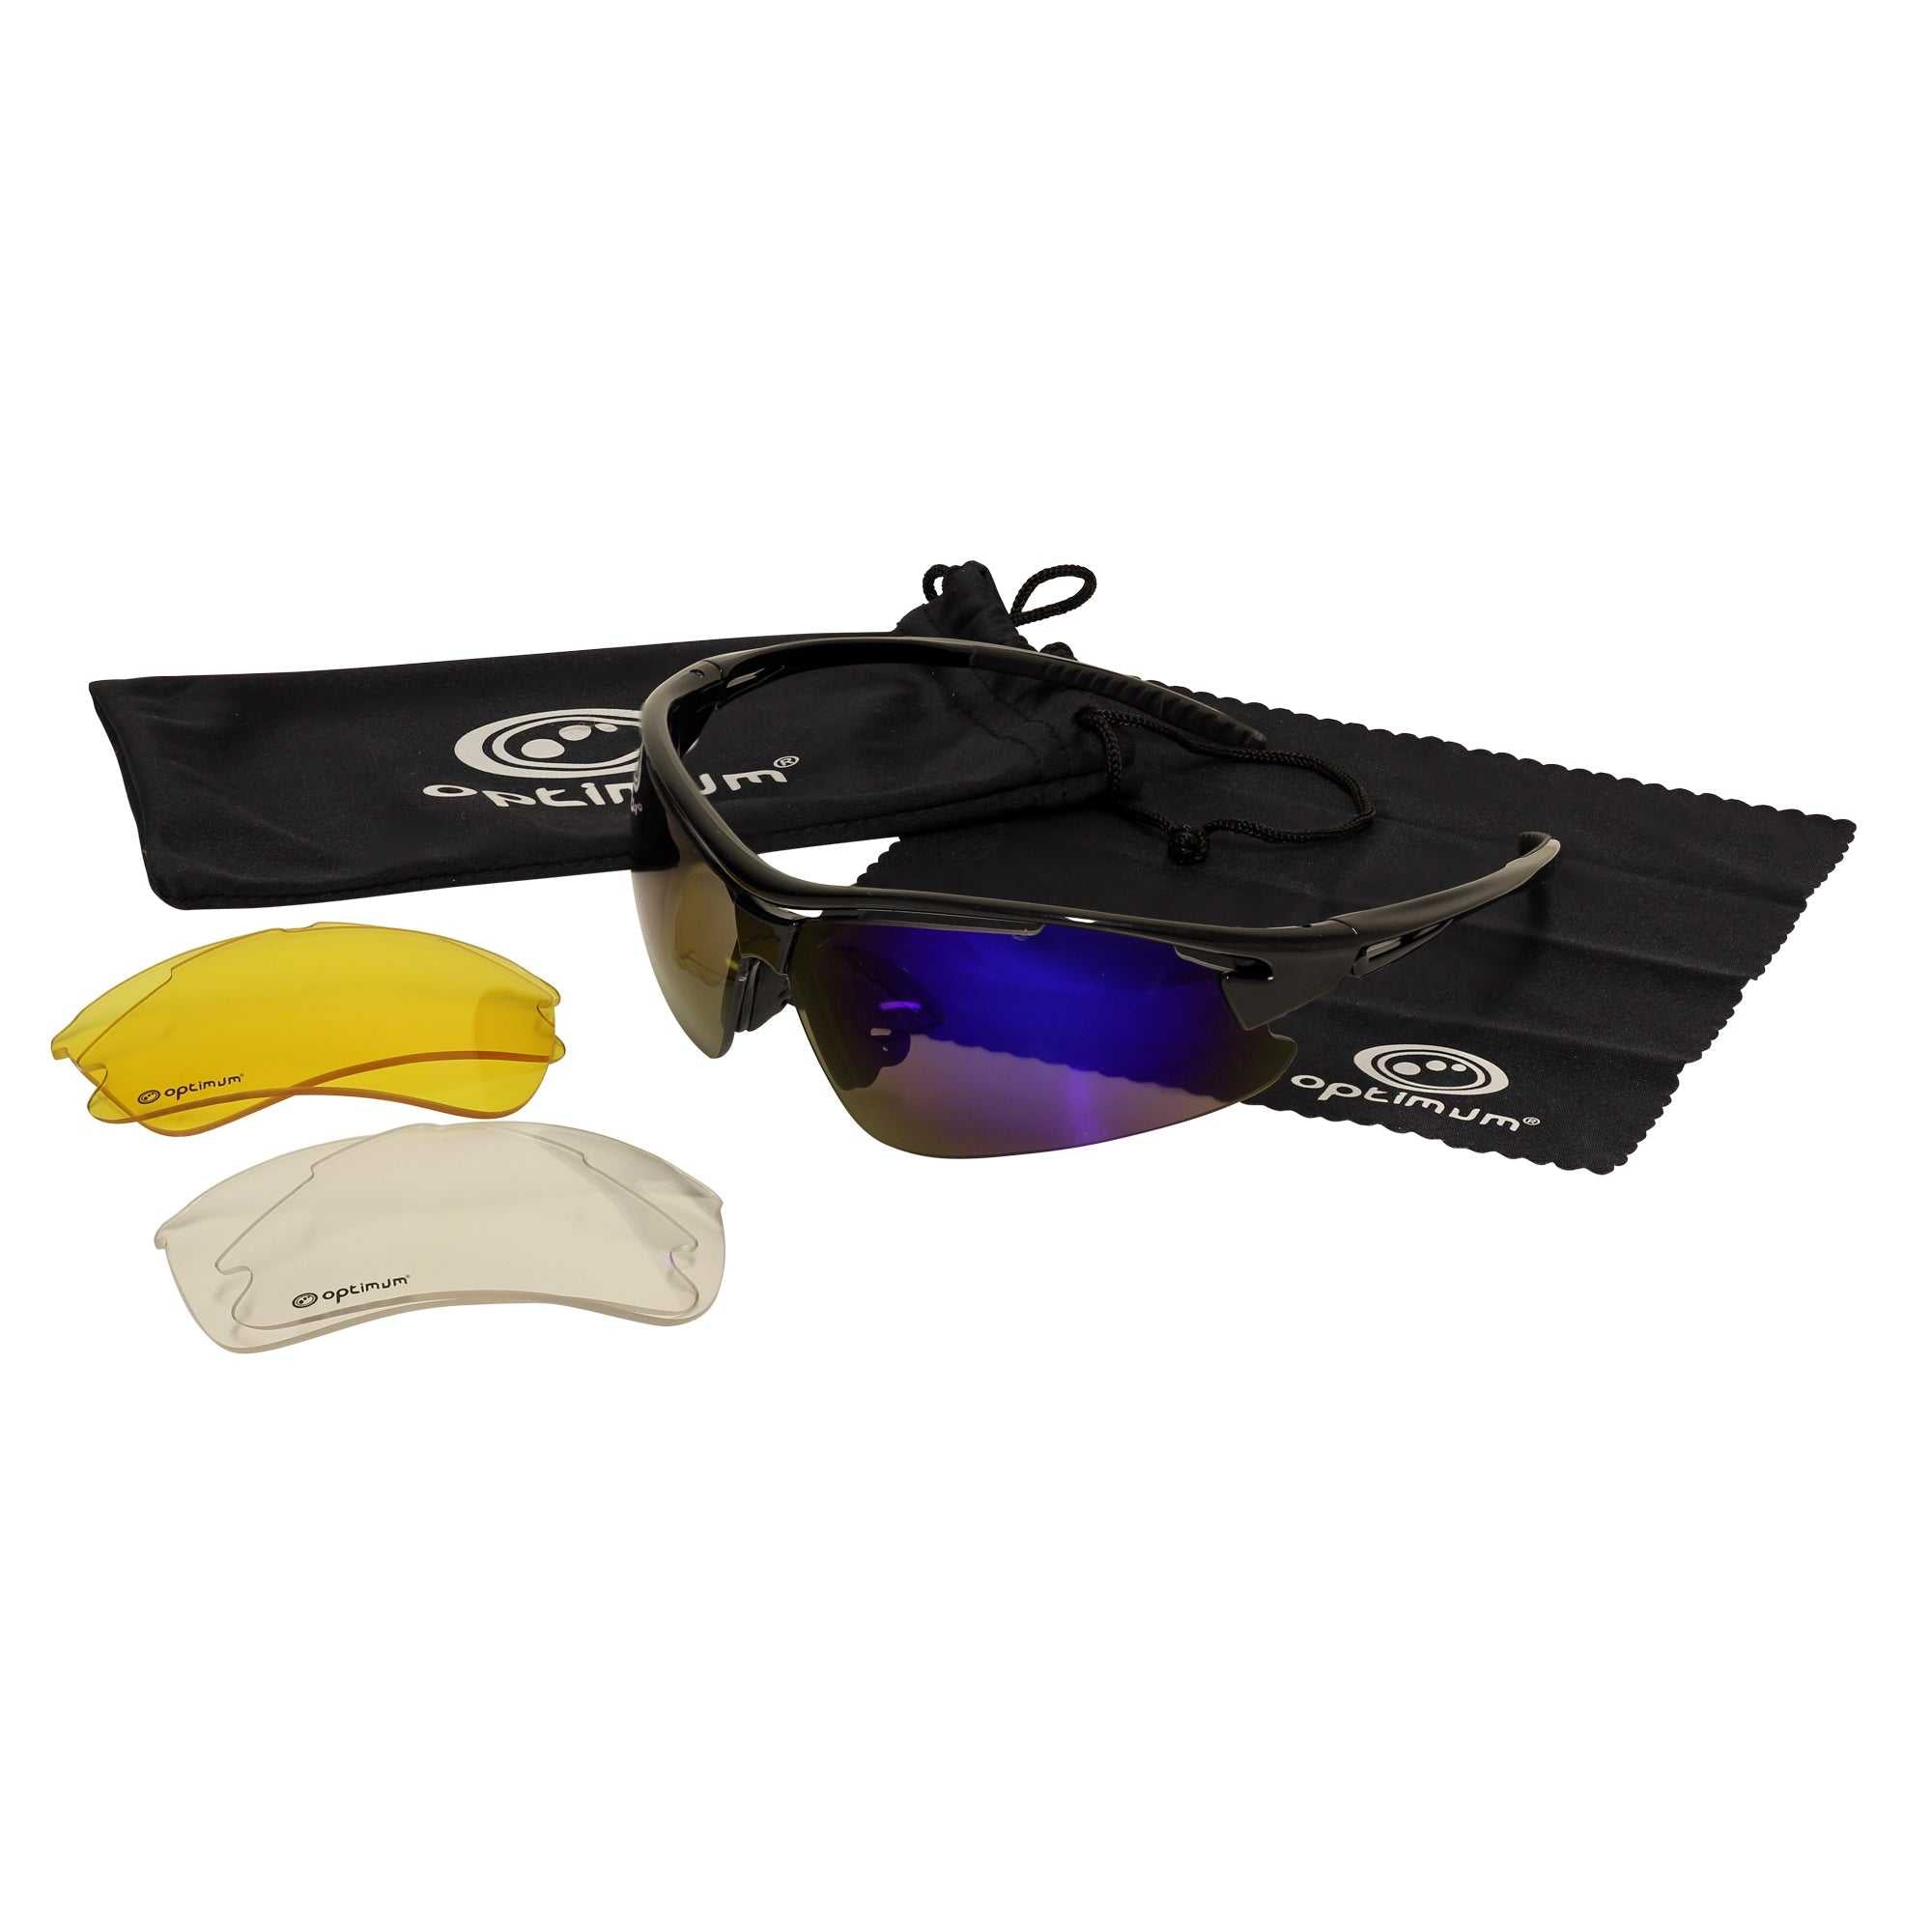 Tri Lens Sunglasses - Optimum